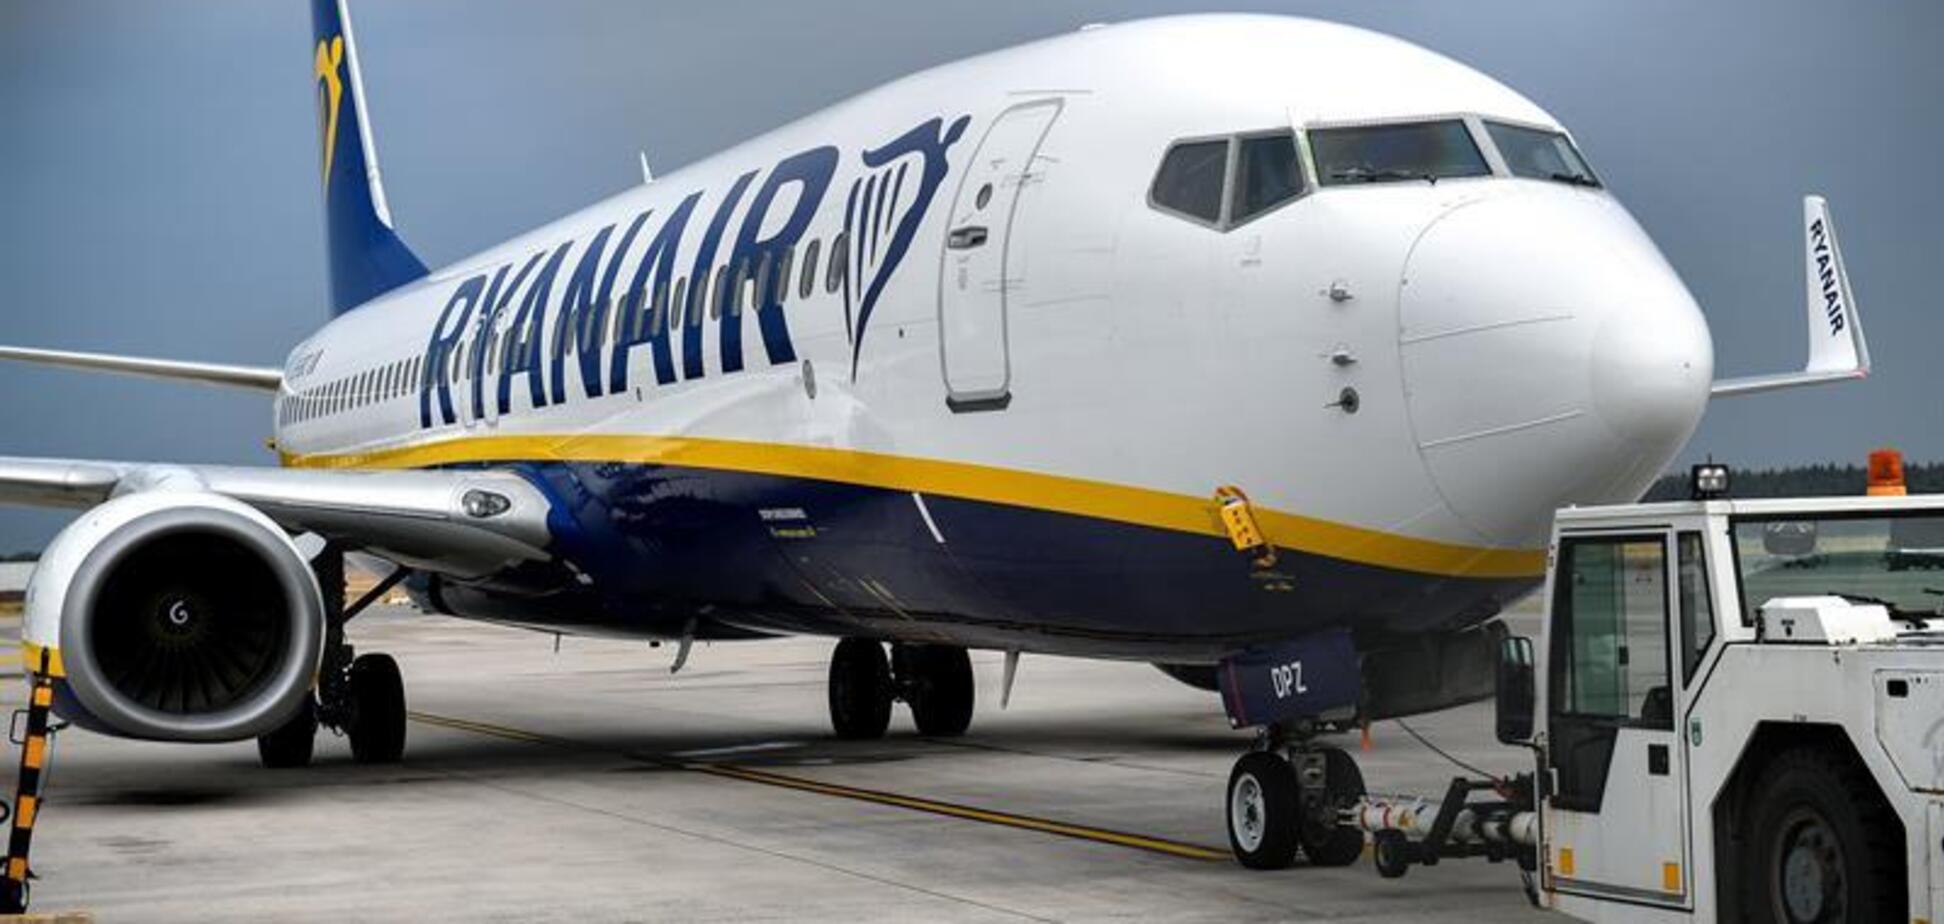 Около 30 тыс. пассажиров: Ryanair угодил в скандал из-за массовой отмены рейсов